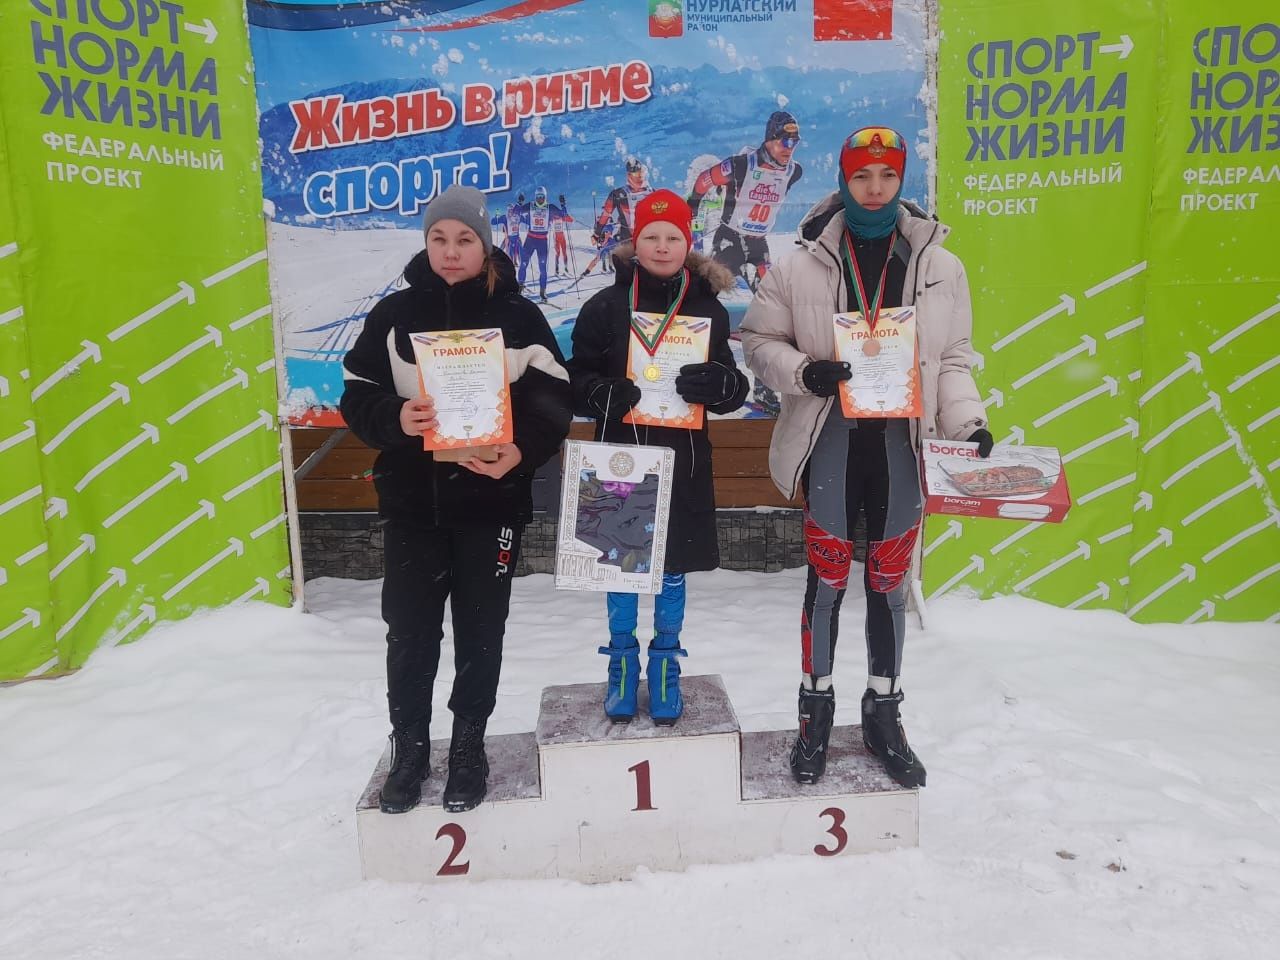 Аксубаевские лыжники открыли сезон успешным забегом